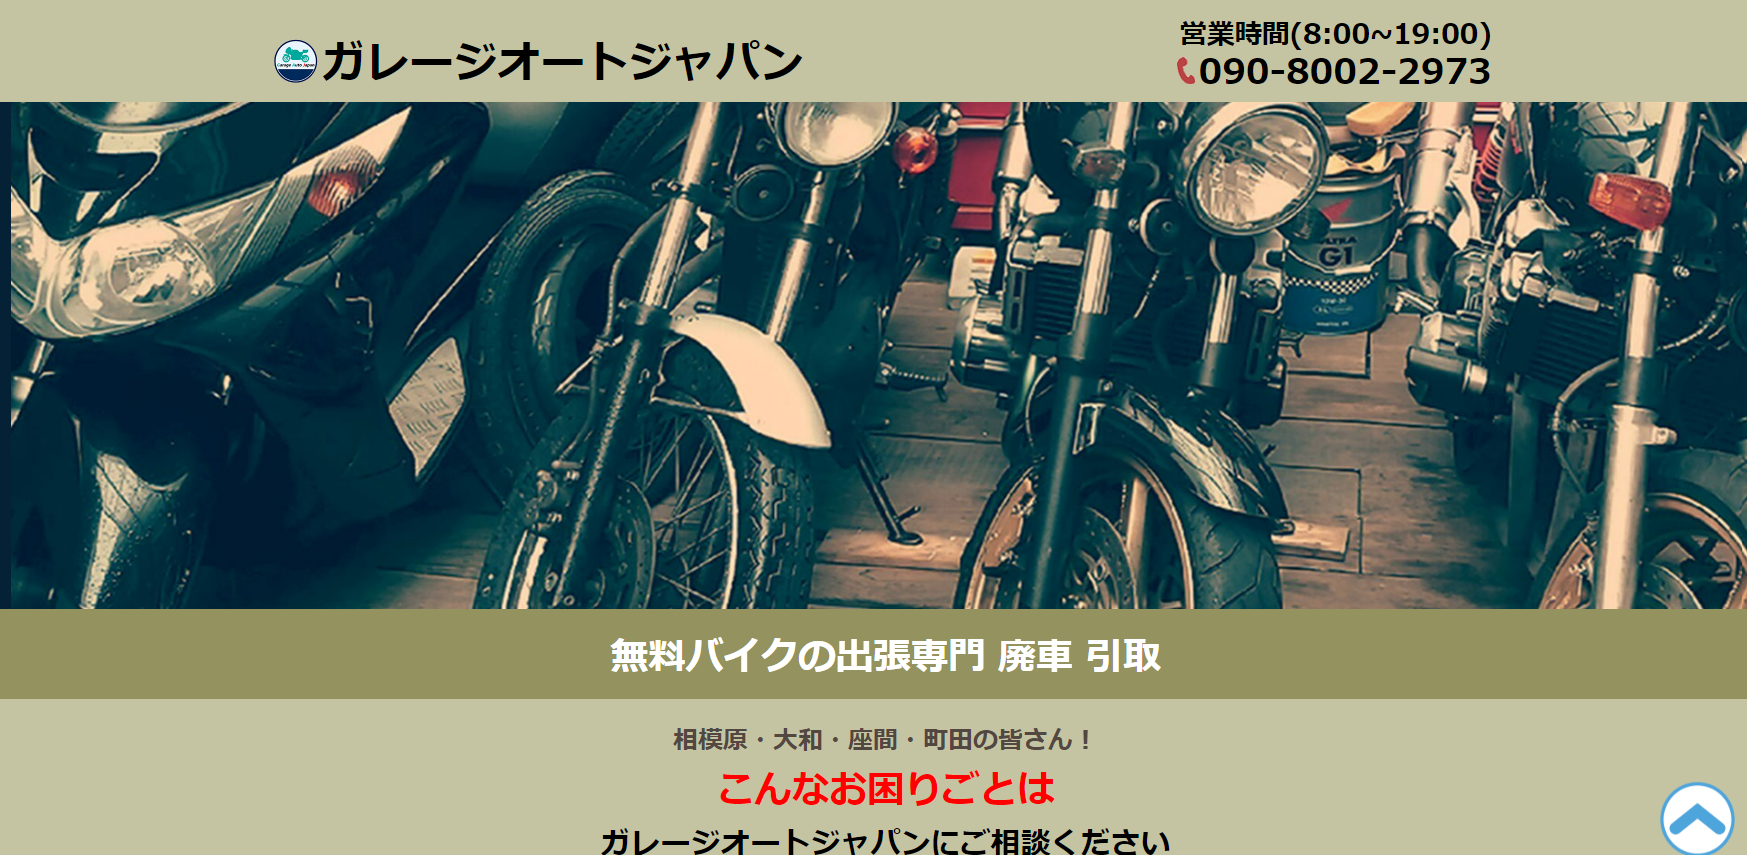 ガレージオートジャパンのホームページ